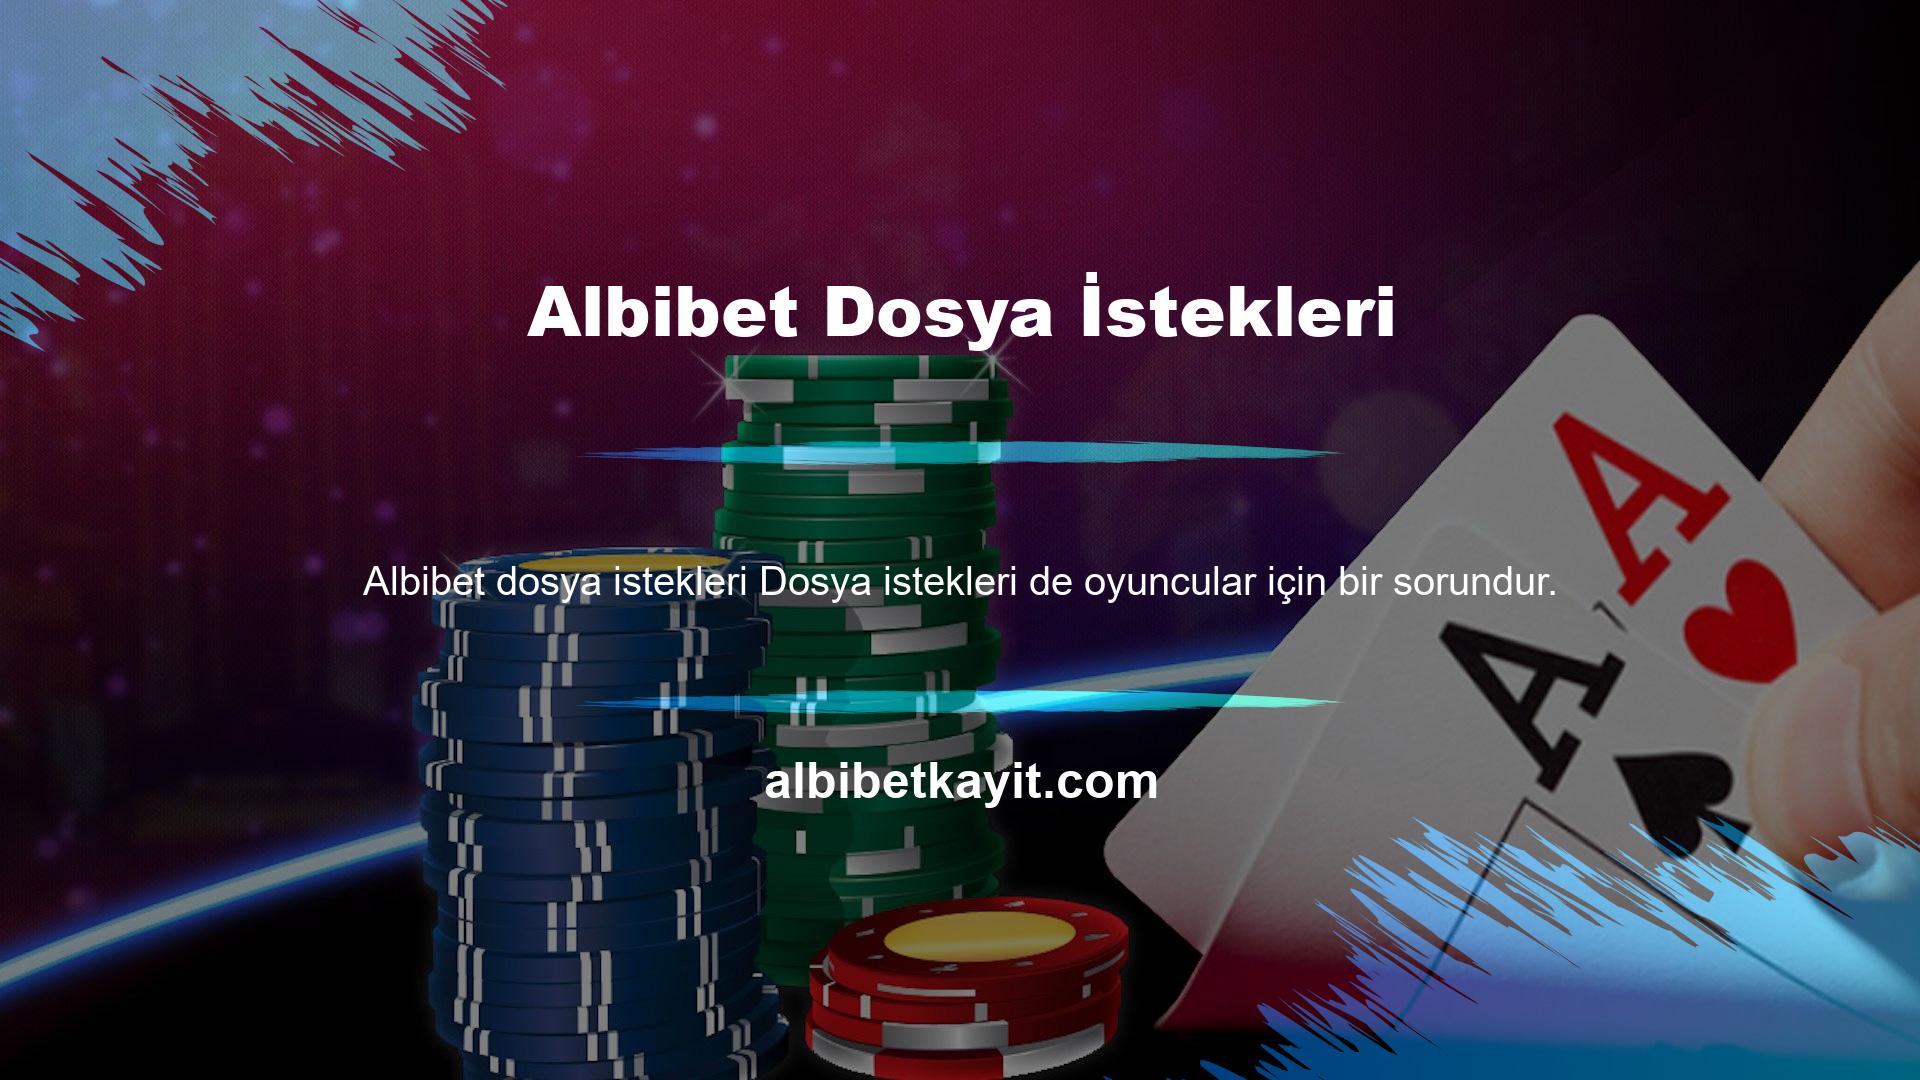 Albibet Oyun Sitesi, belge talep etme hakkını saklı tutan bir şirkettir